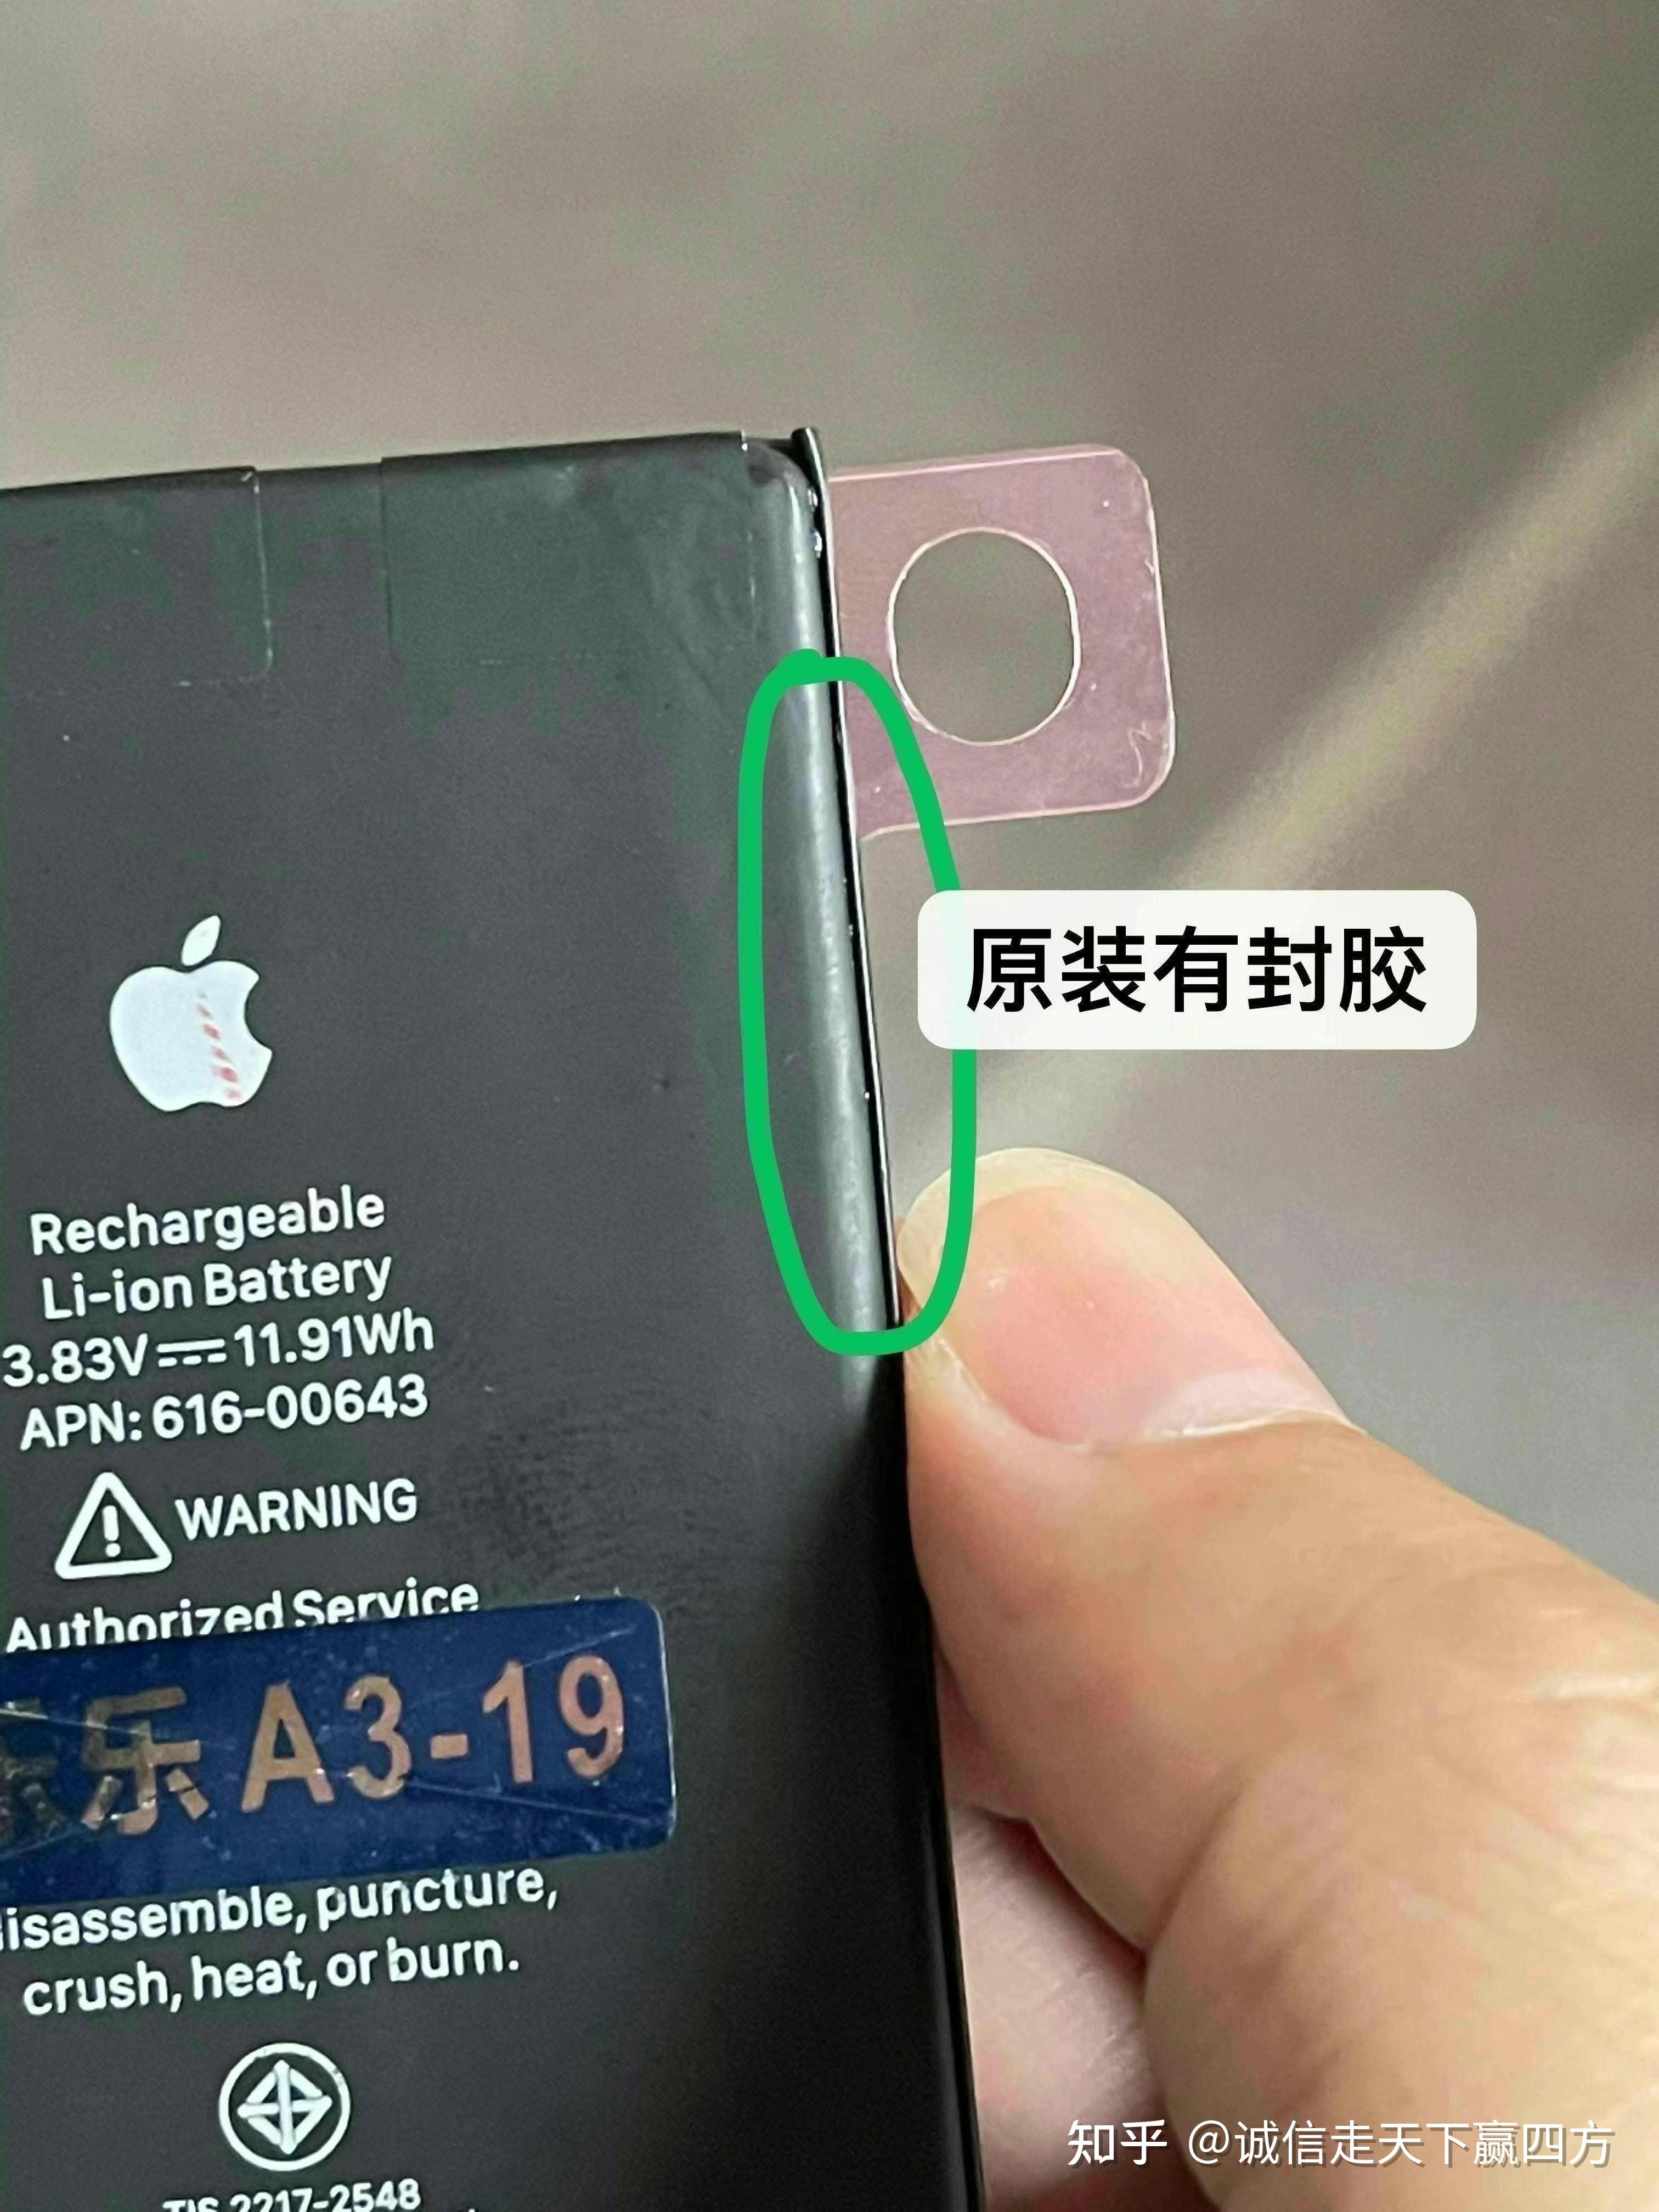 【相应缘】iphone11原装电池鉴别